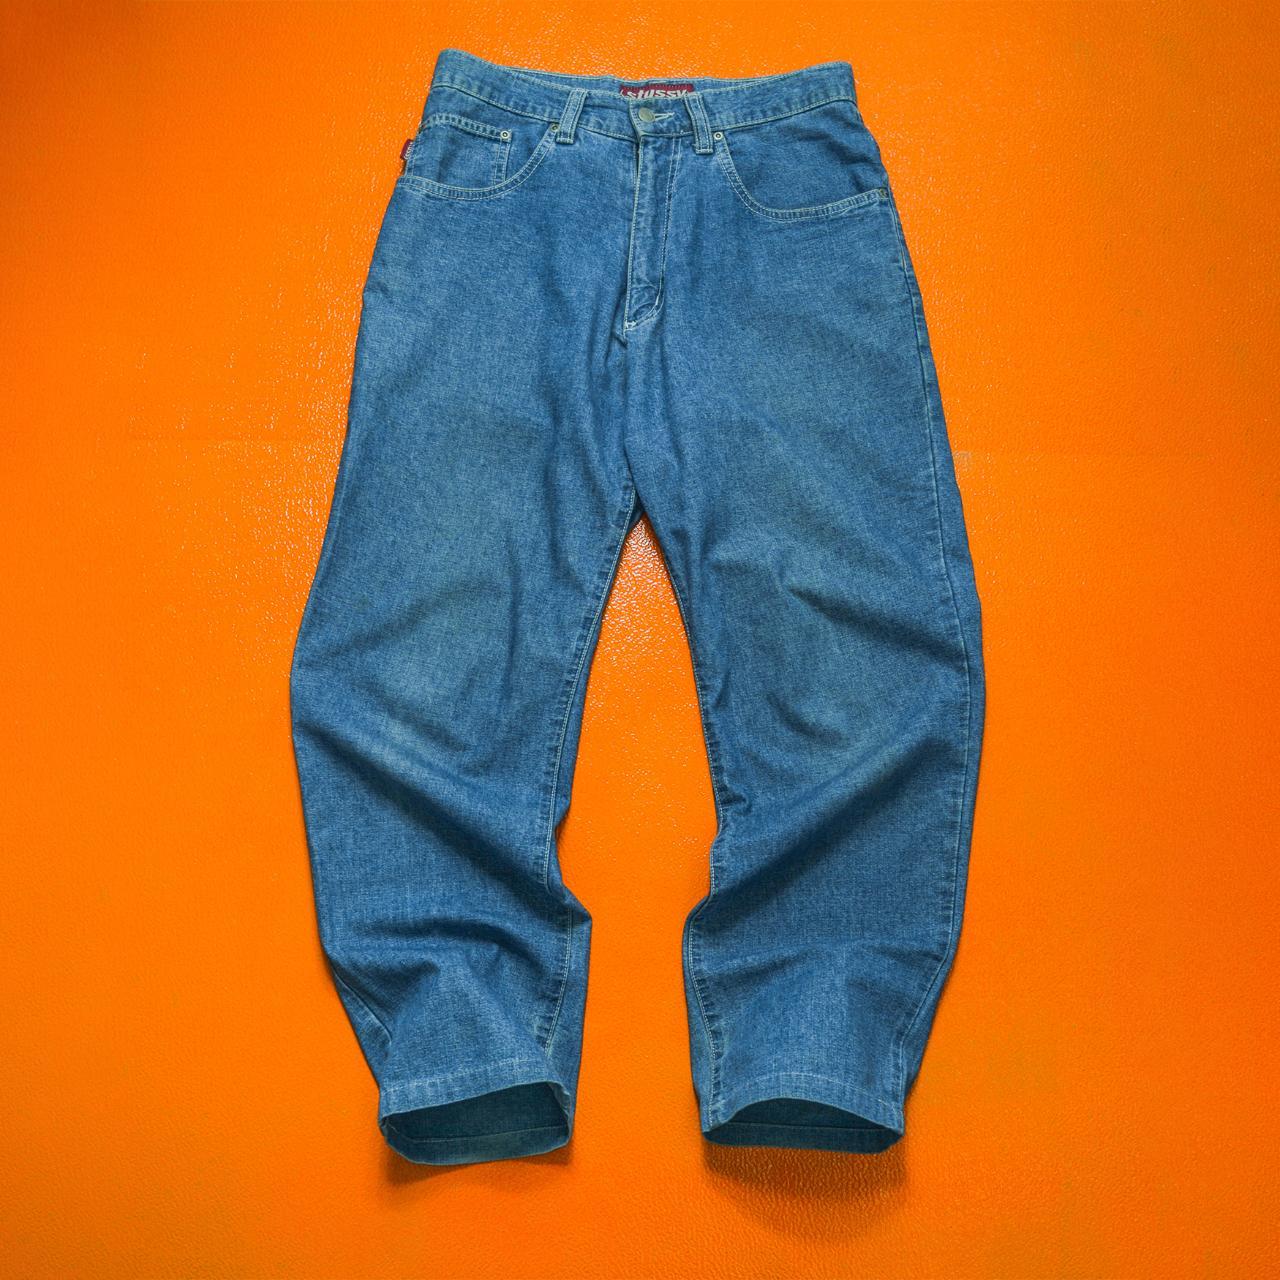 Stussy Vintage Late 90s Red Tab Blue Jeans / Denim... - Depop